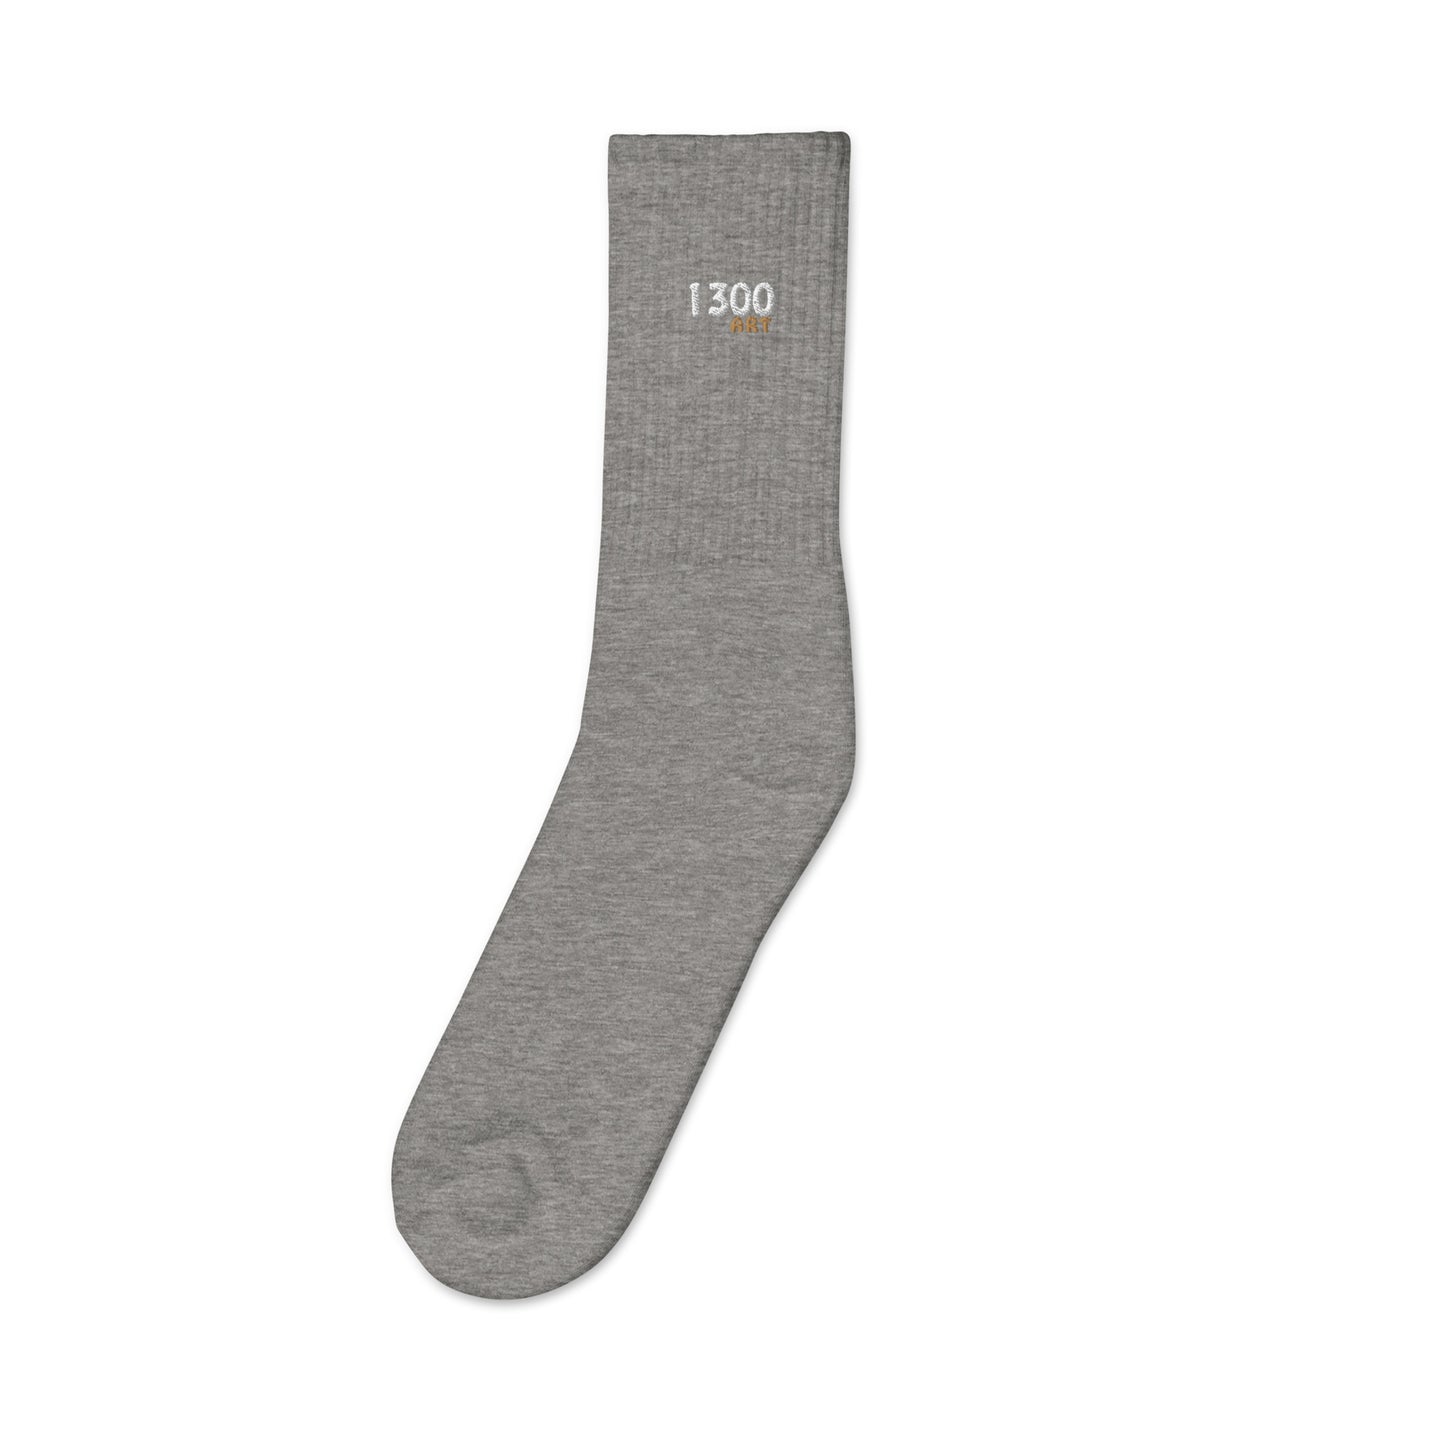 "1300 ART" Embroidered socks